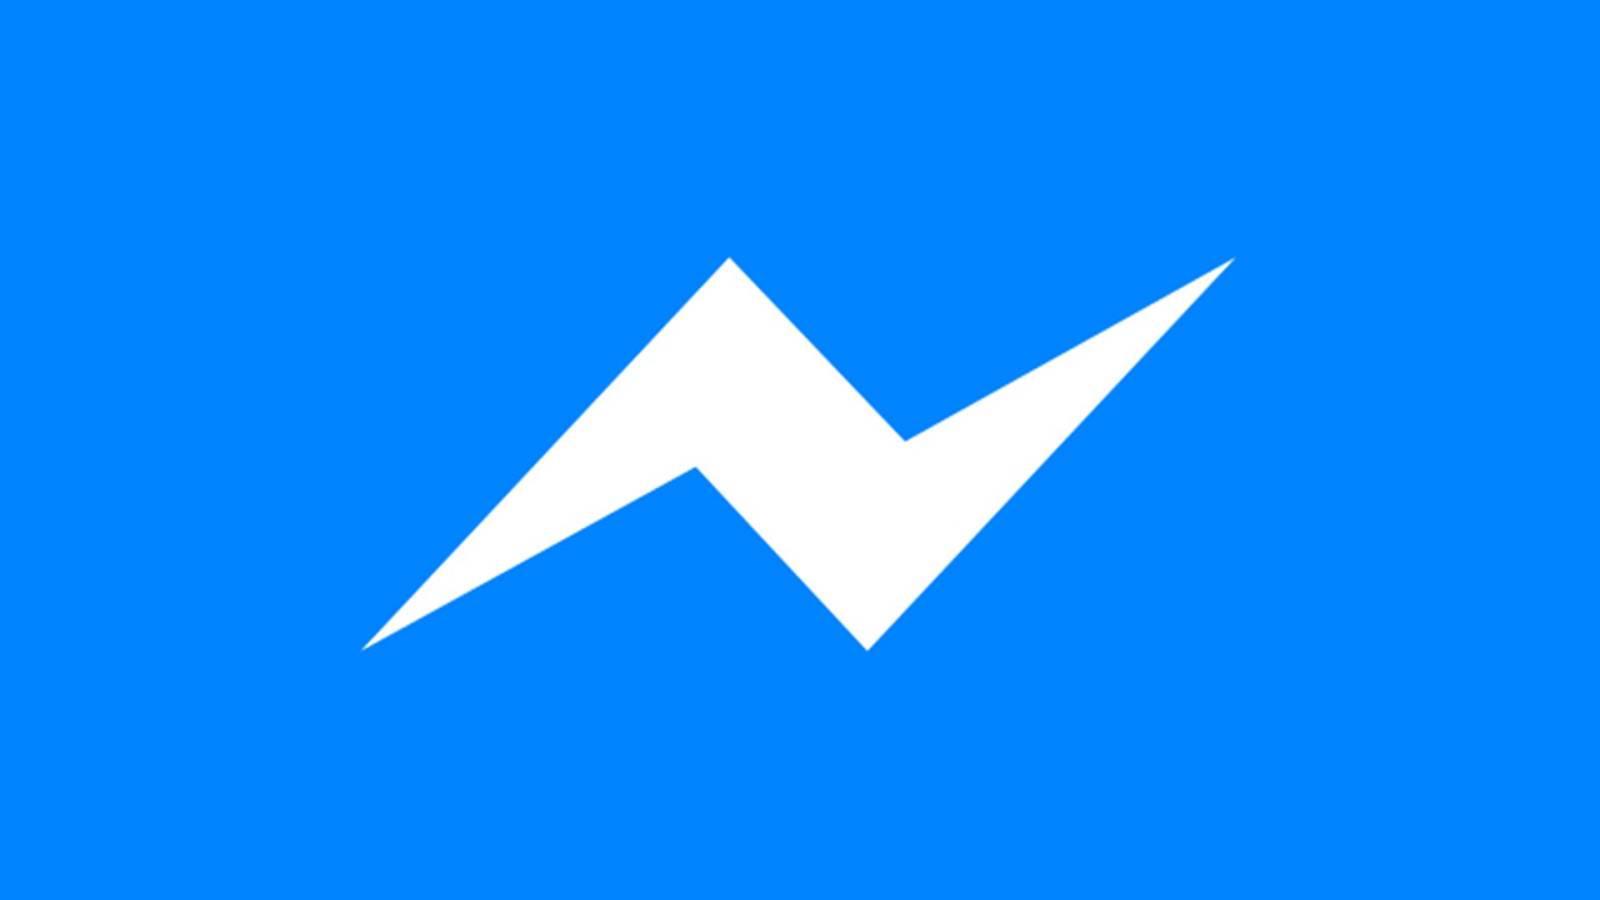 Facebook Messenger Update a fost Lansat, care sunt Schimbarile Oferite